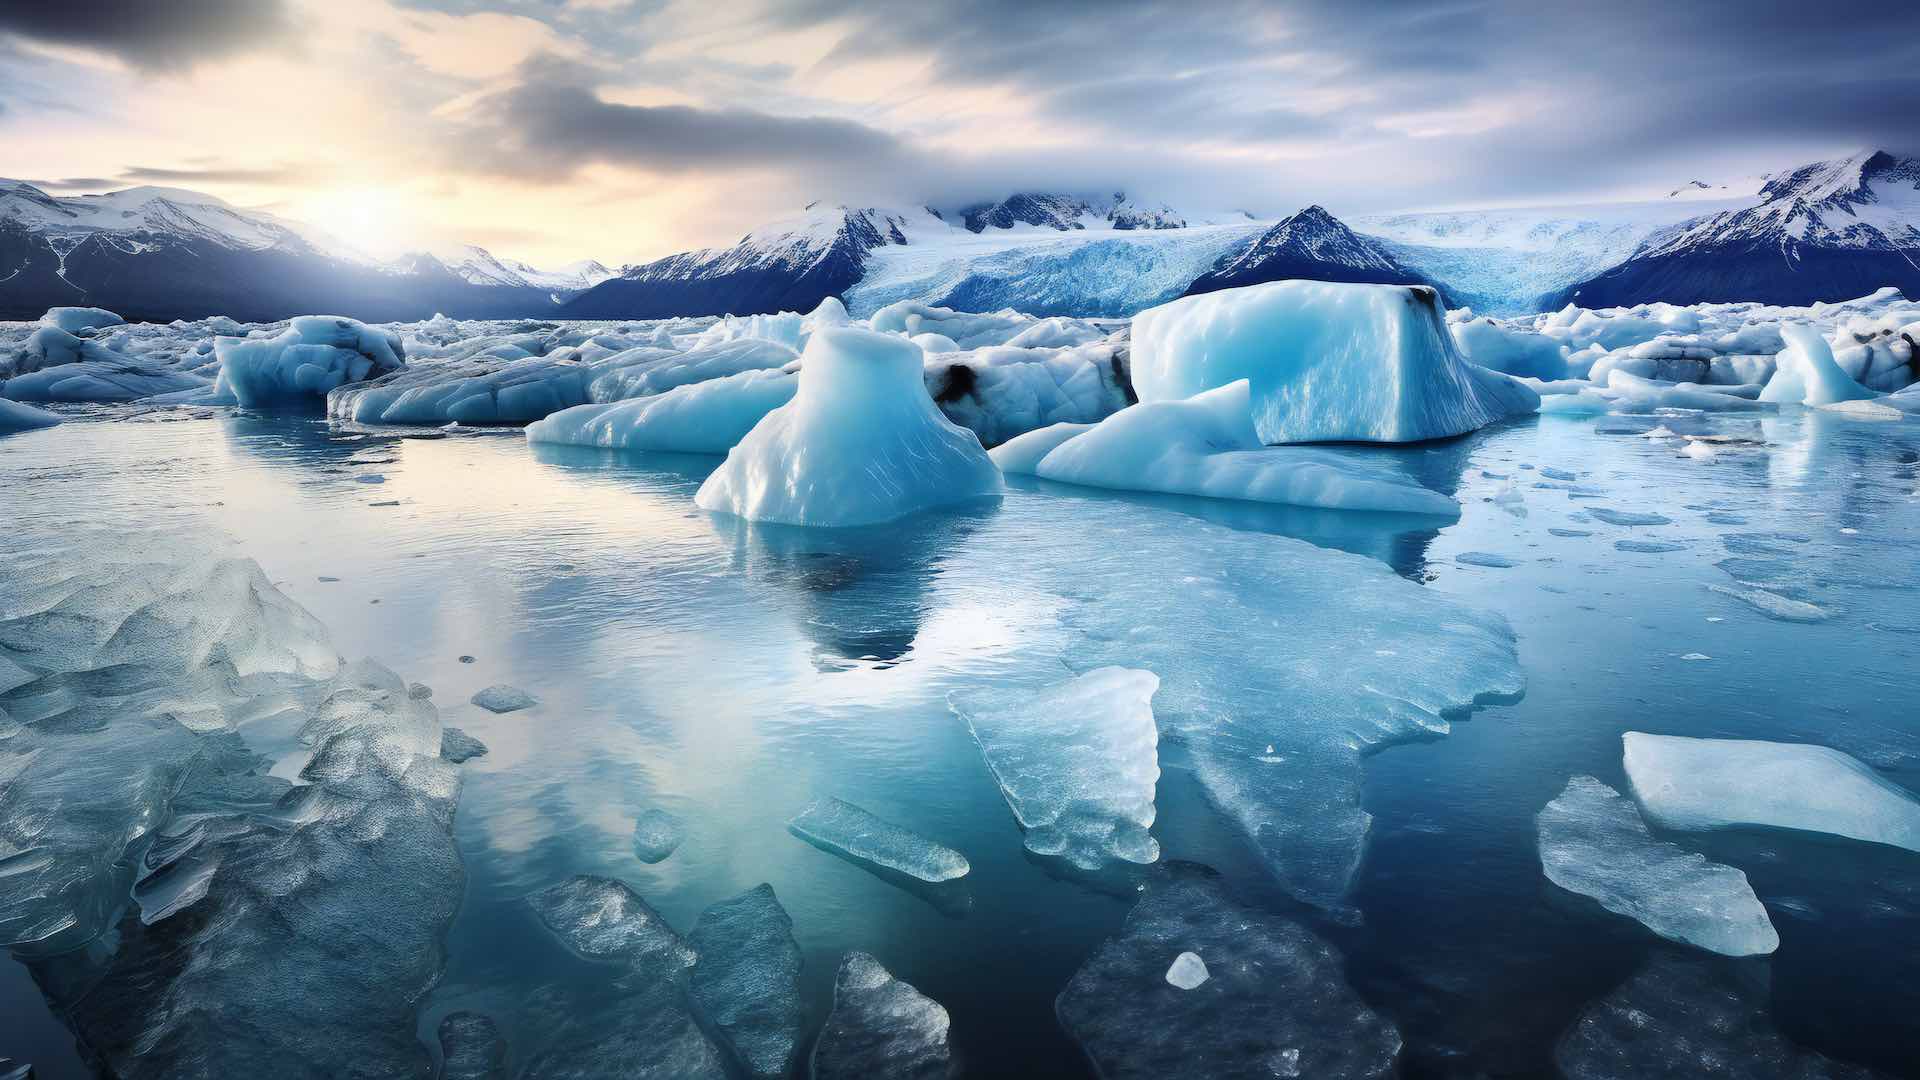 ग्रीनलँडची बर्फाची चादर 20% वेगाने वितळते, असे अभ्यास सांगतो